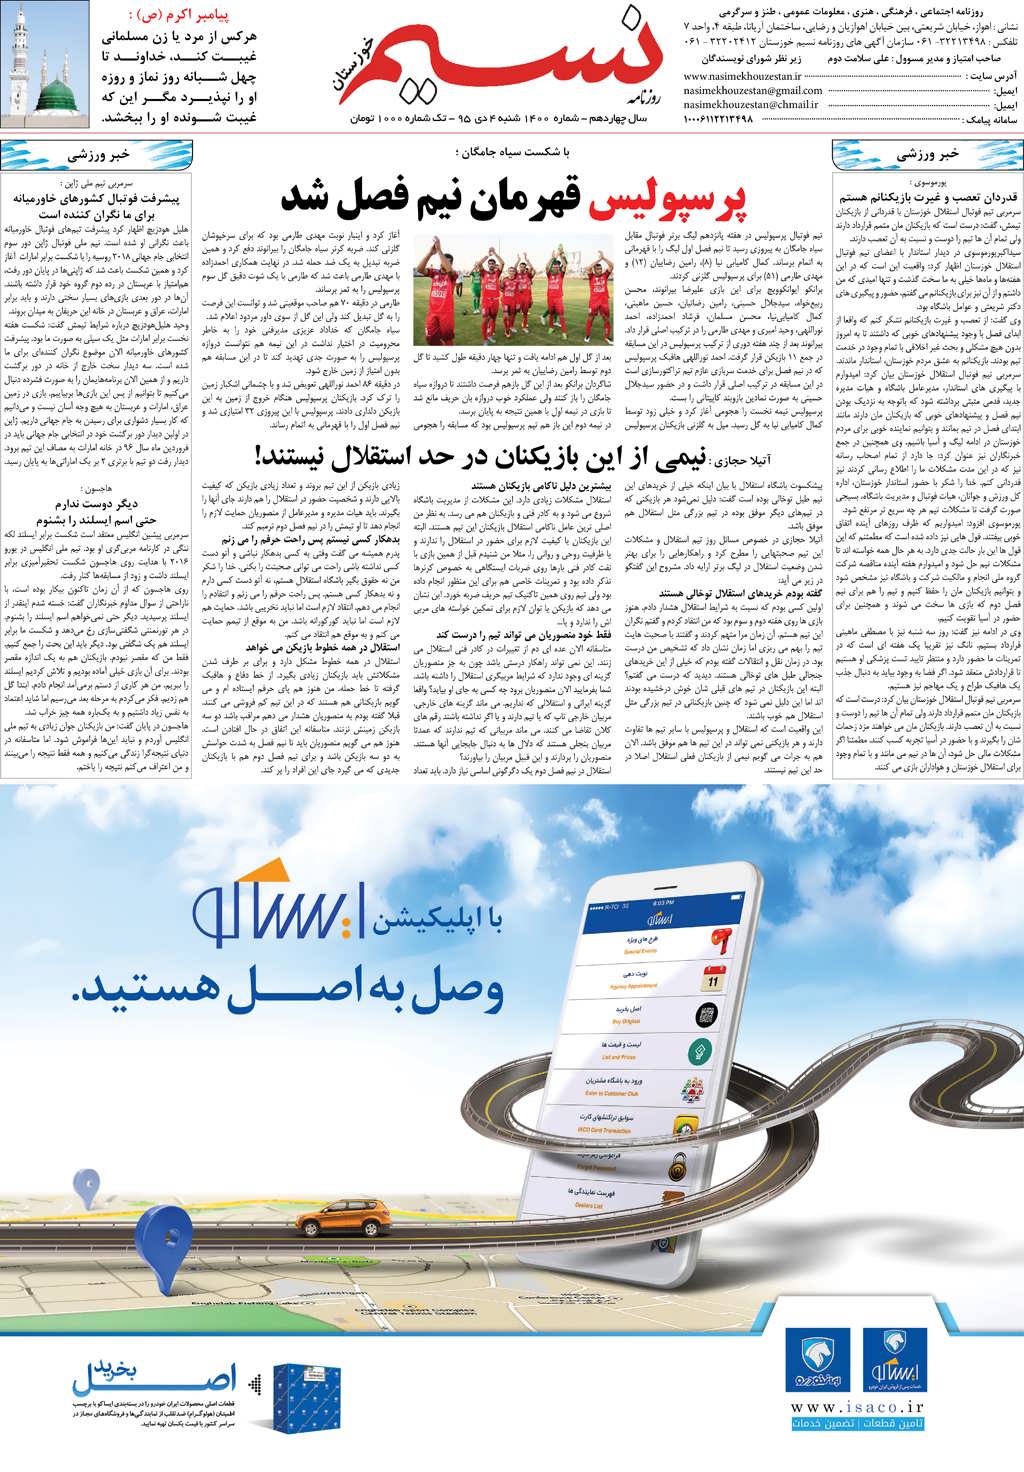 صفحه آخر روزنامه نسیم شماره 1400